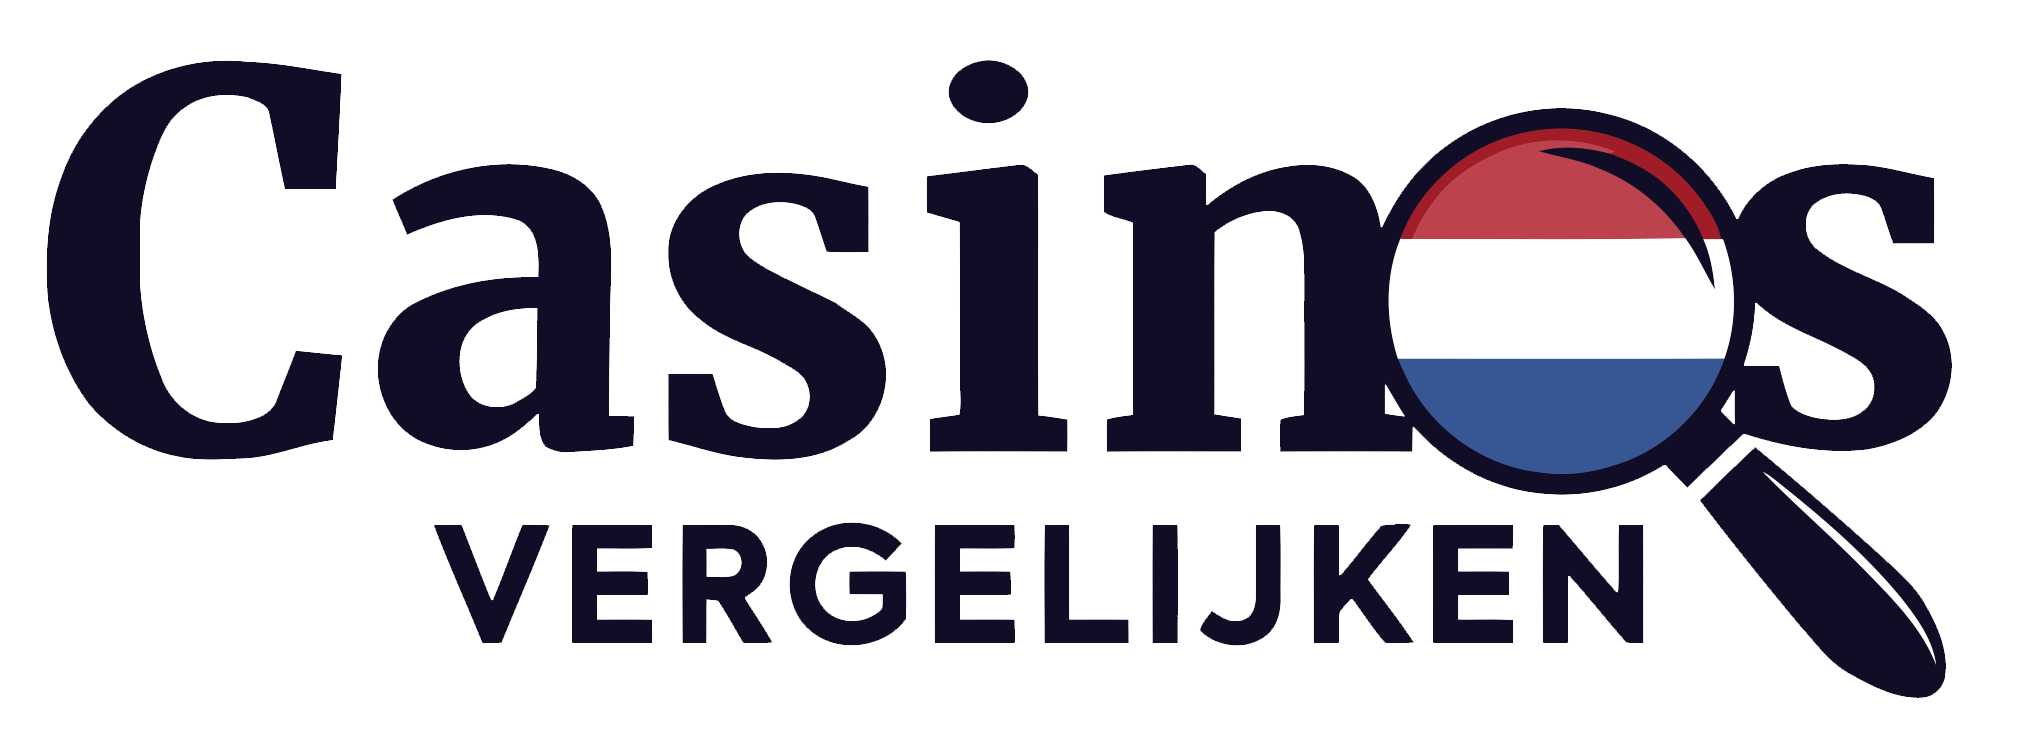 CasinosVergelijken logo